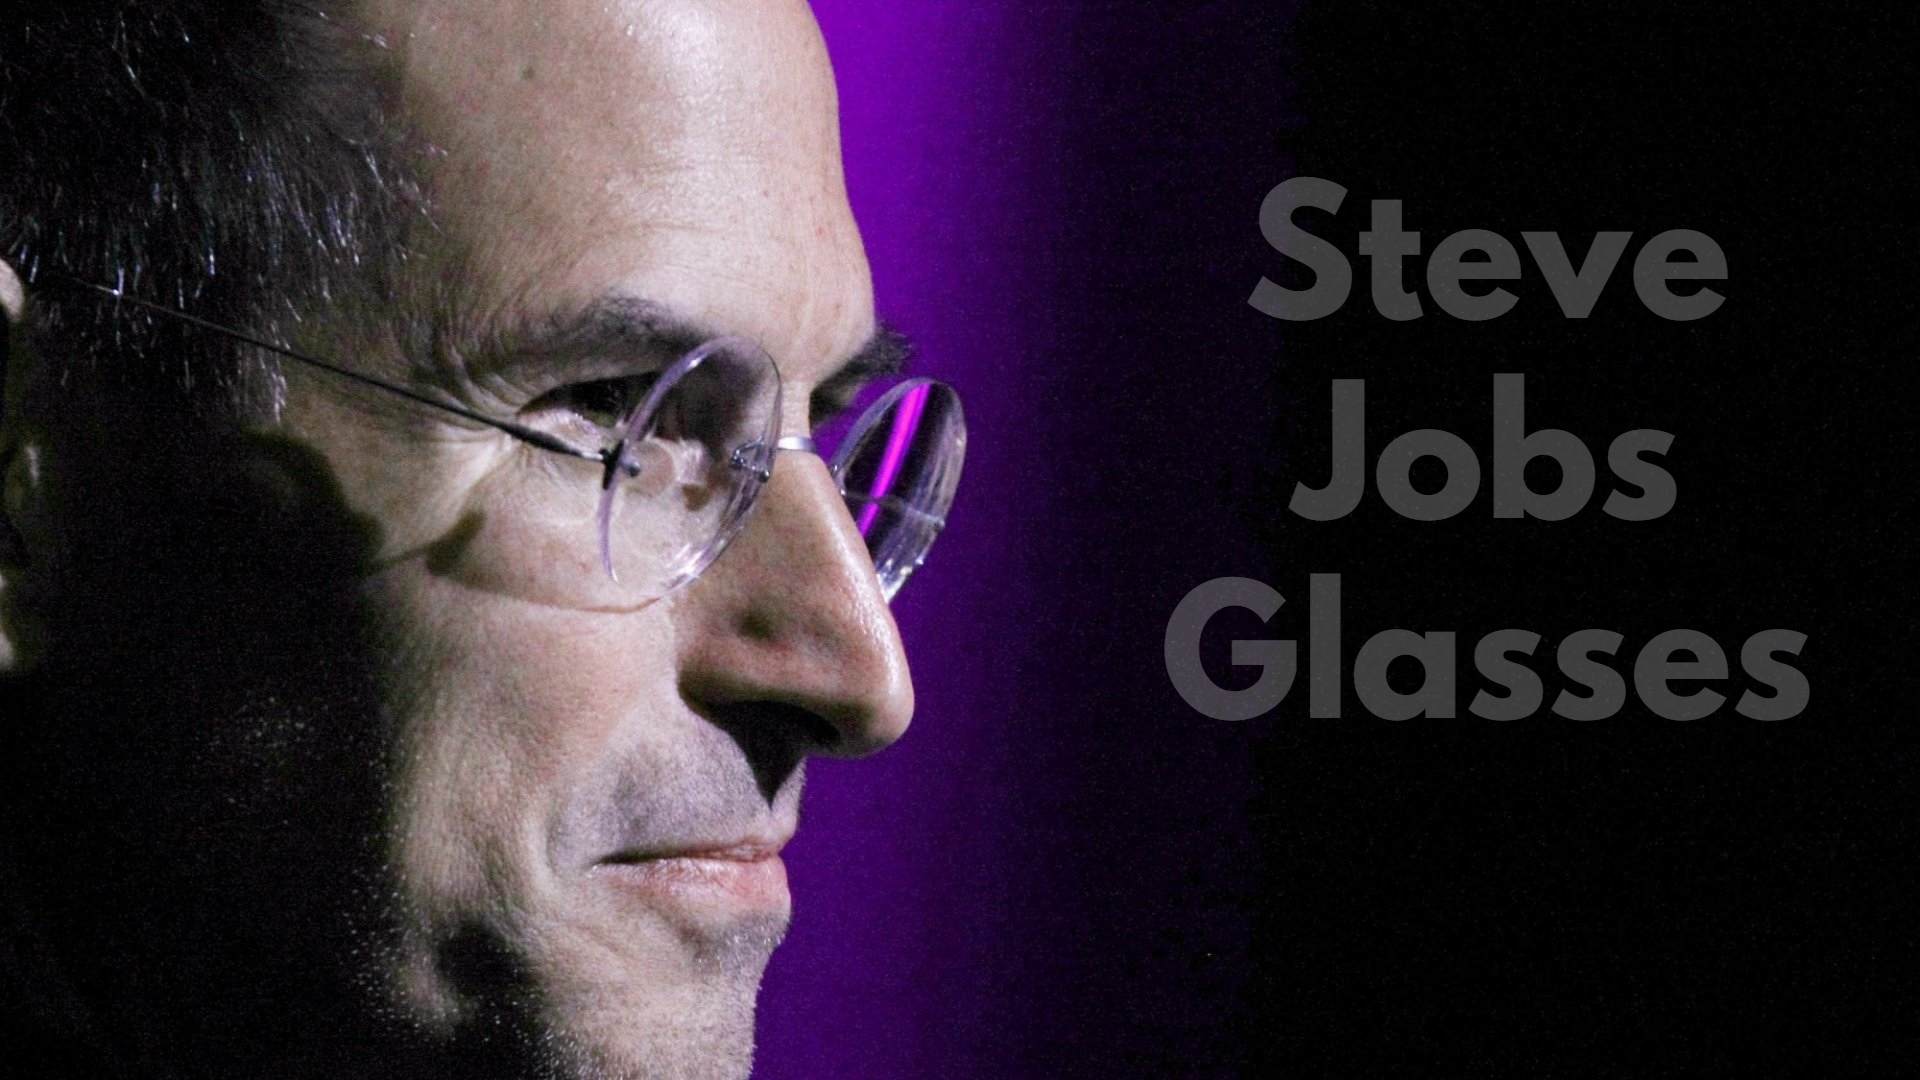 Steve Jobs Glasses - Are His Glasses Really Inspired From Gandhi?